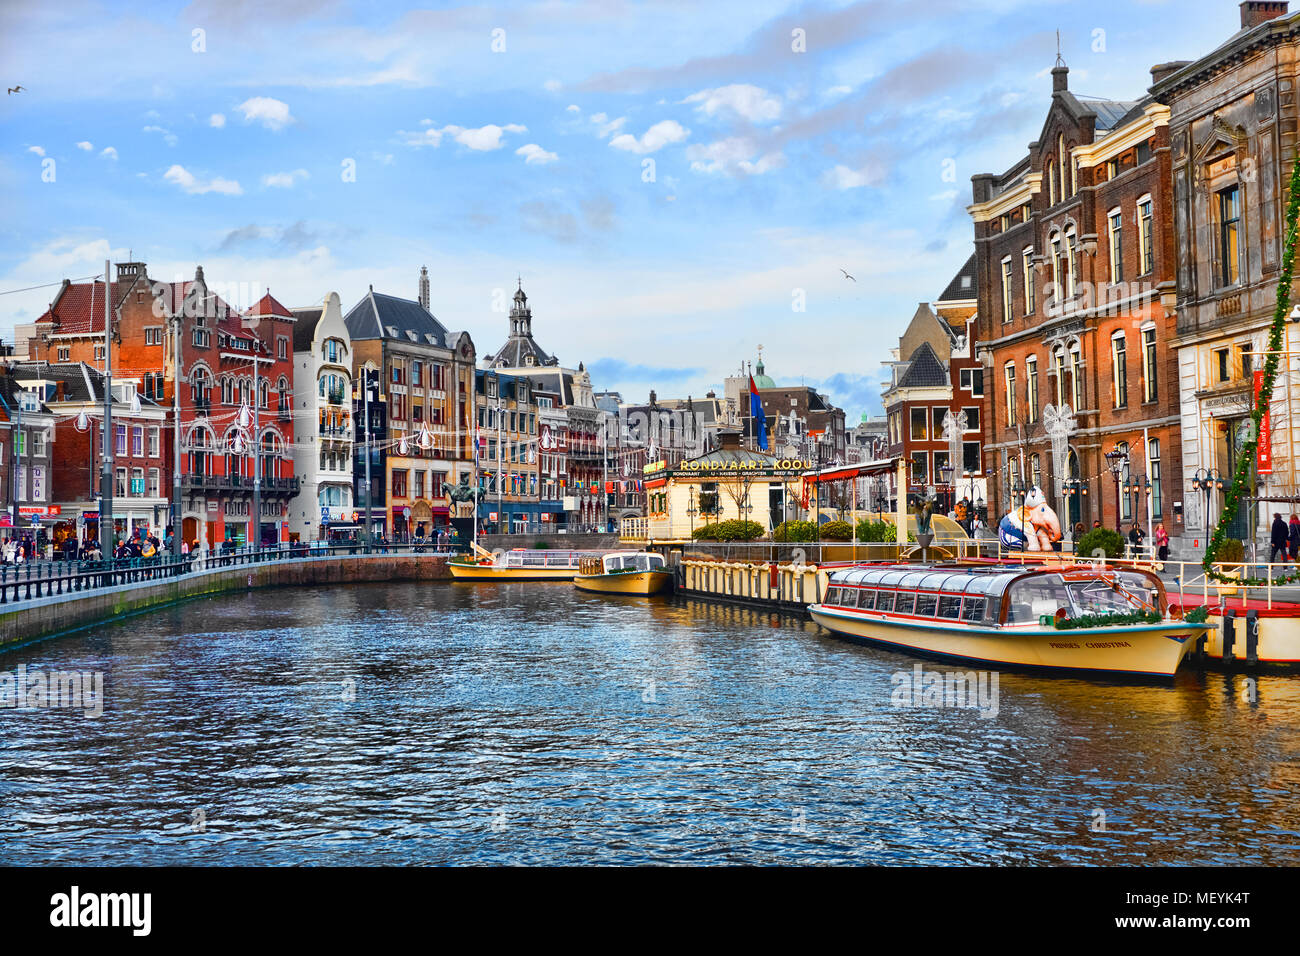 AMSTERDAM, NIEDERLANDE - 1. JANUAR 2018: Malerische Aussicht auf das Stadtzentrum von Amsterdam an sonnigen Tag nach Weihnachten. Canal touristische Boote sind festgebunden. Stockfoto